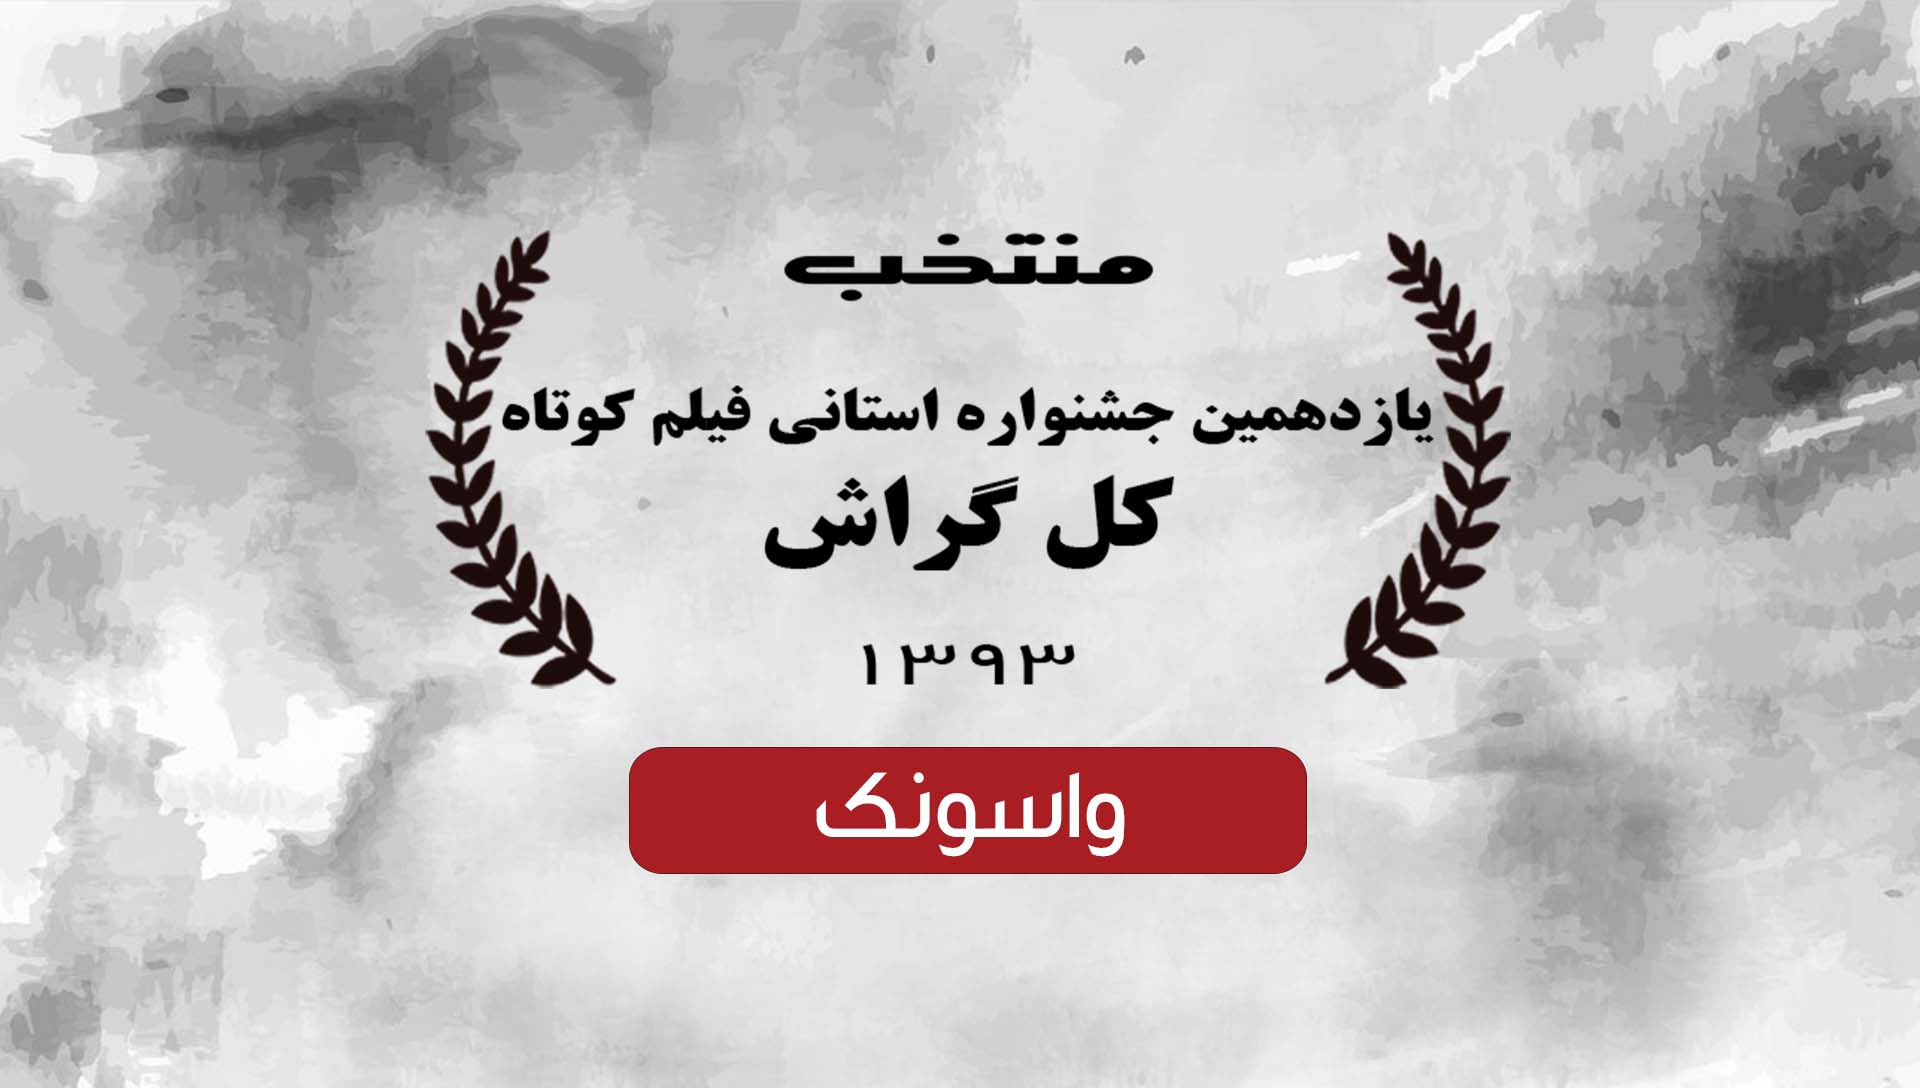 جشنواره کل گراش 93 - شرکت فیلم سازی زوم شیراز برادران شریفی